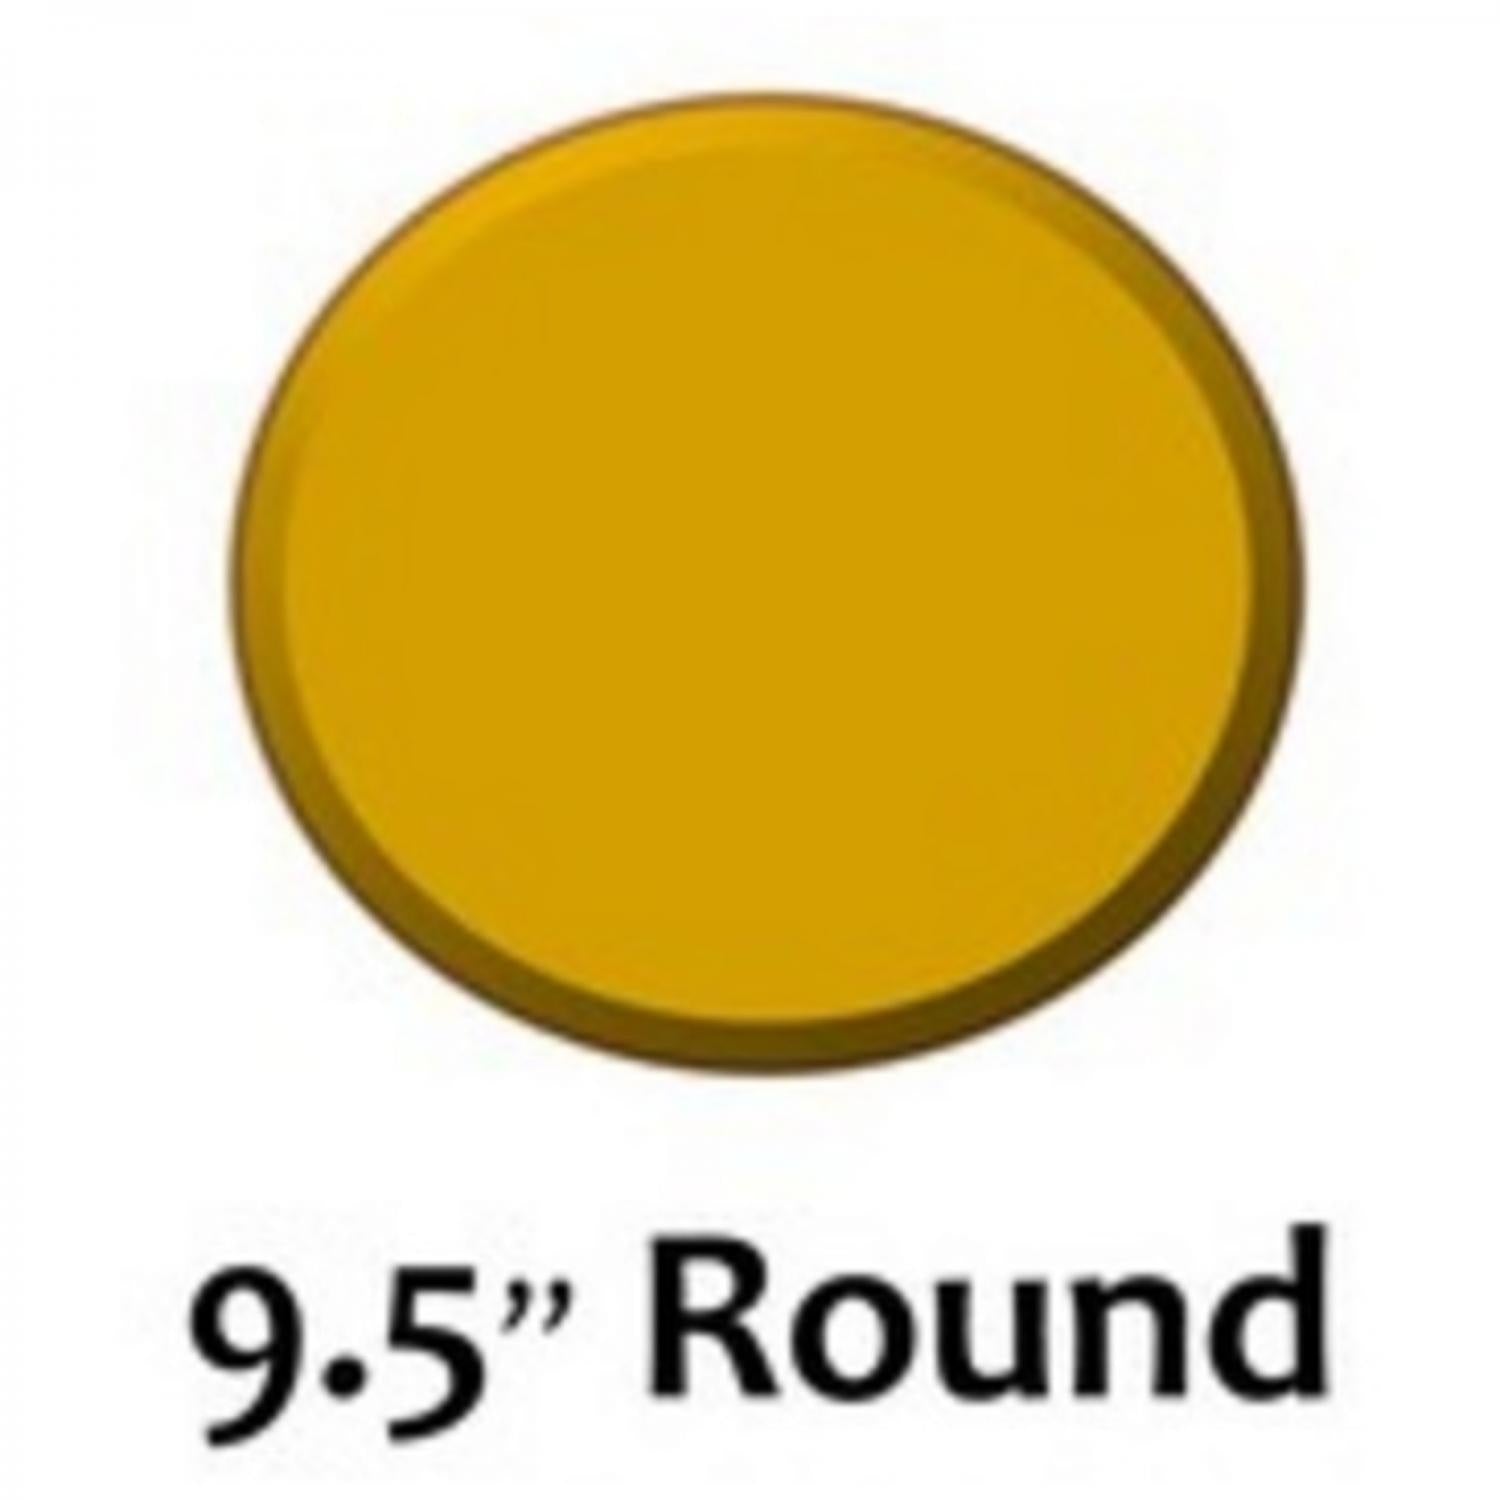 9.5" Round